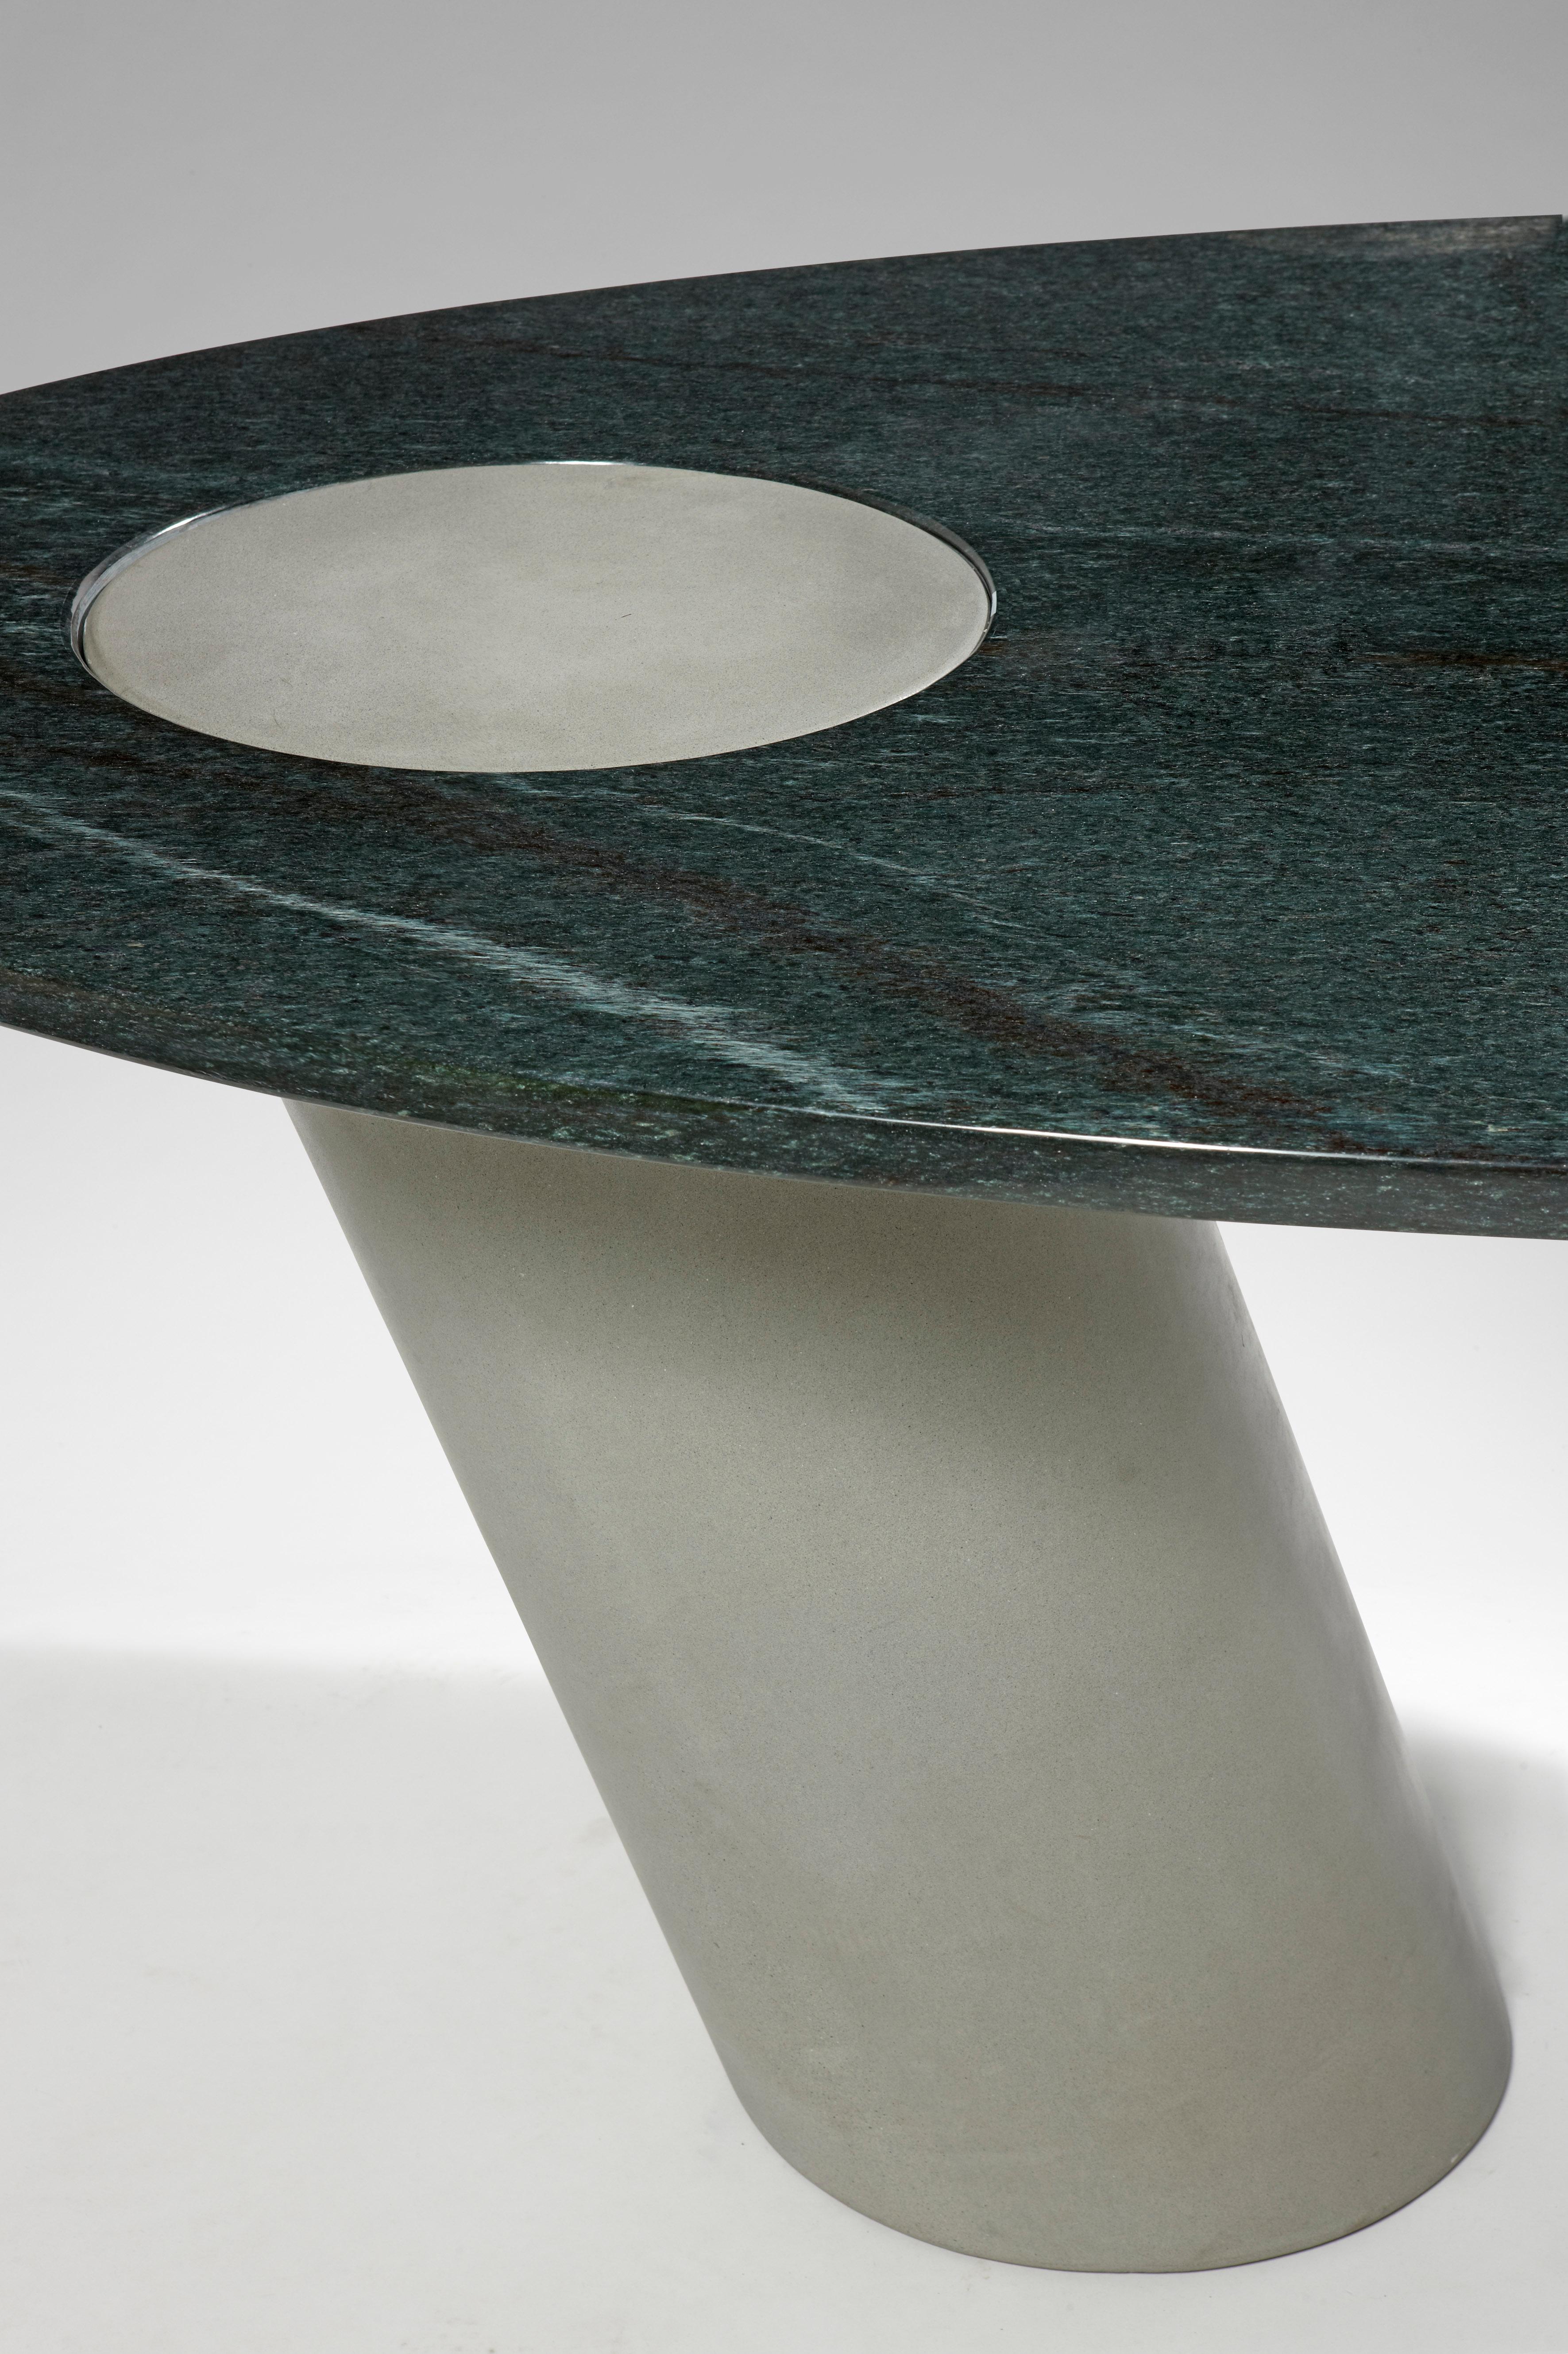 Ein spektakulärer, freitragender Tisch mit Schwerkraftgelenk, der von dem berühmten Architekten Angelo Mangiarotti entworfen wurde. 
Eine elegante Mischung aus Minimalismus und Steintexturen.